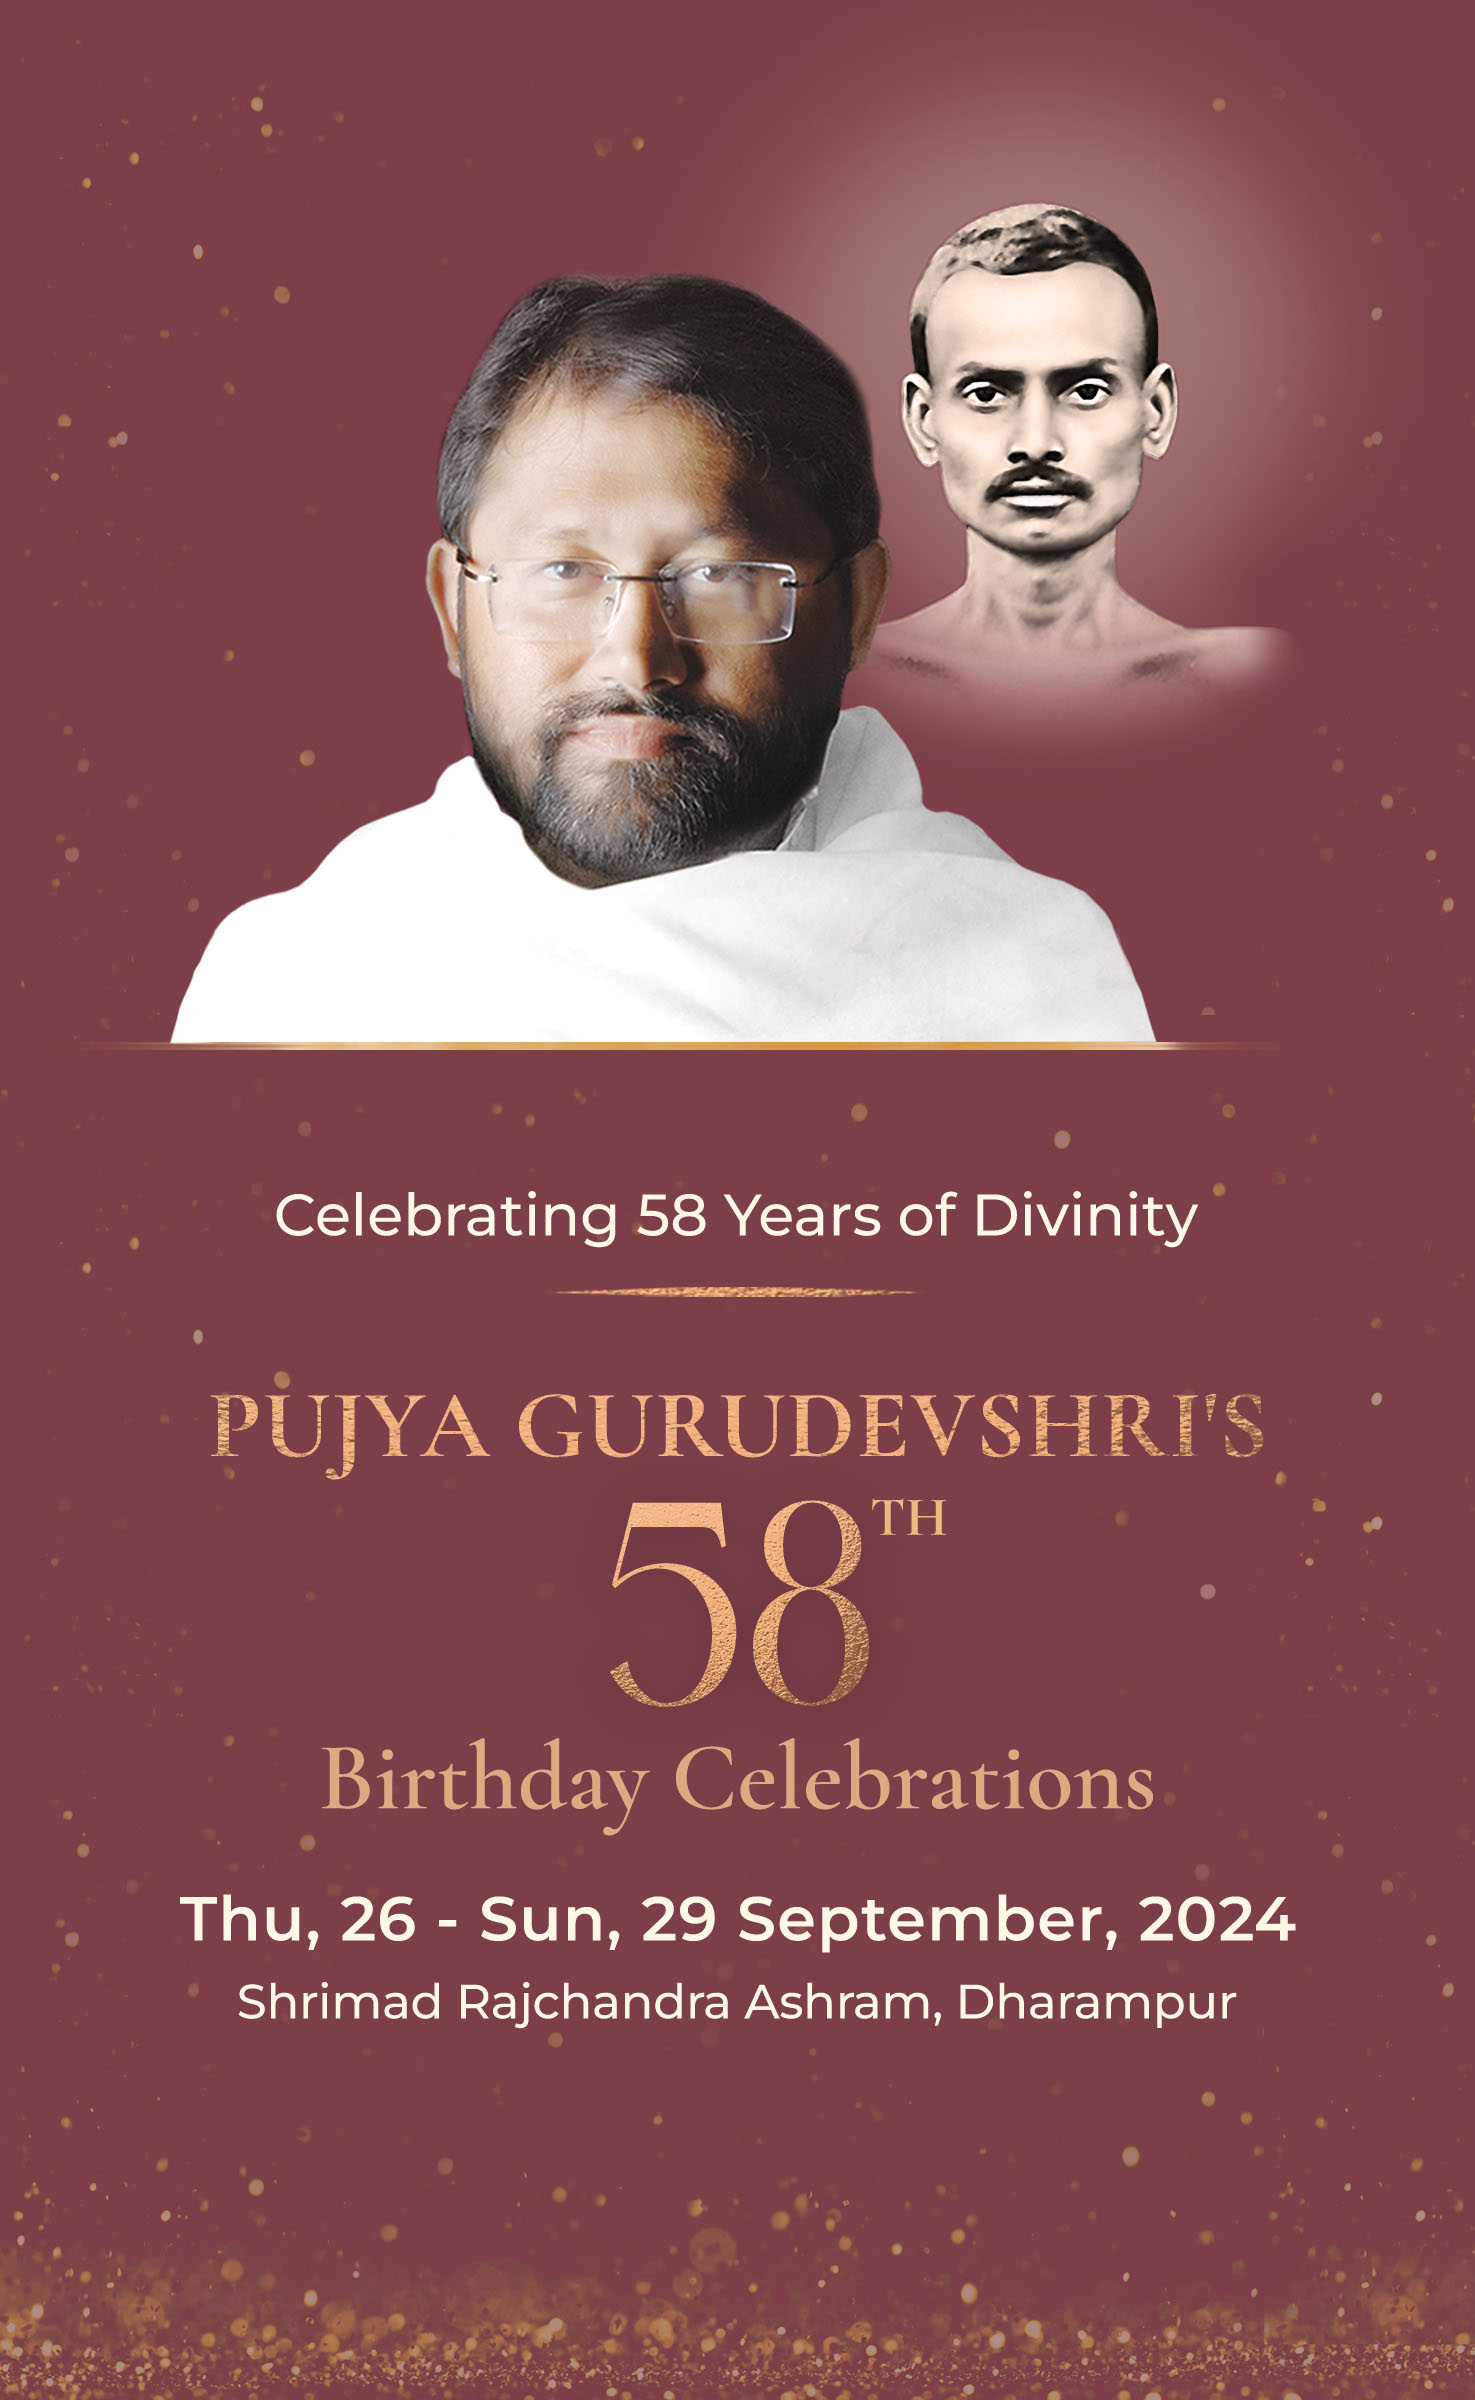 Pujya Gurudevshri Rakeshji's 58th Birthday Celebrations